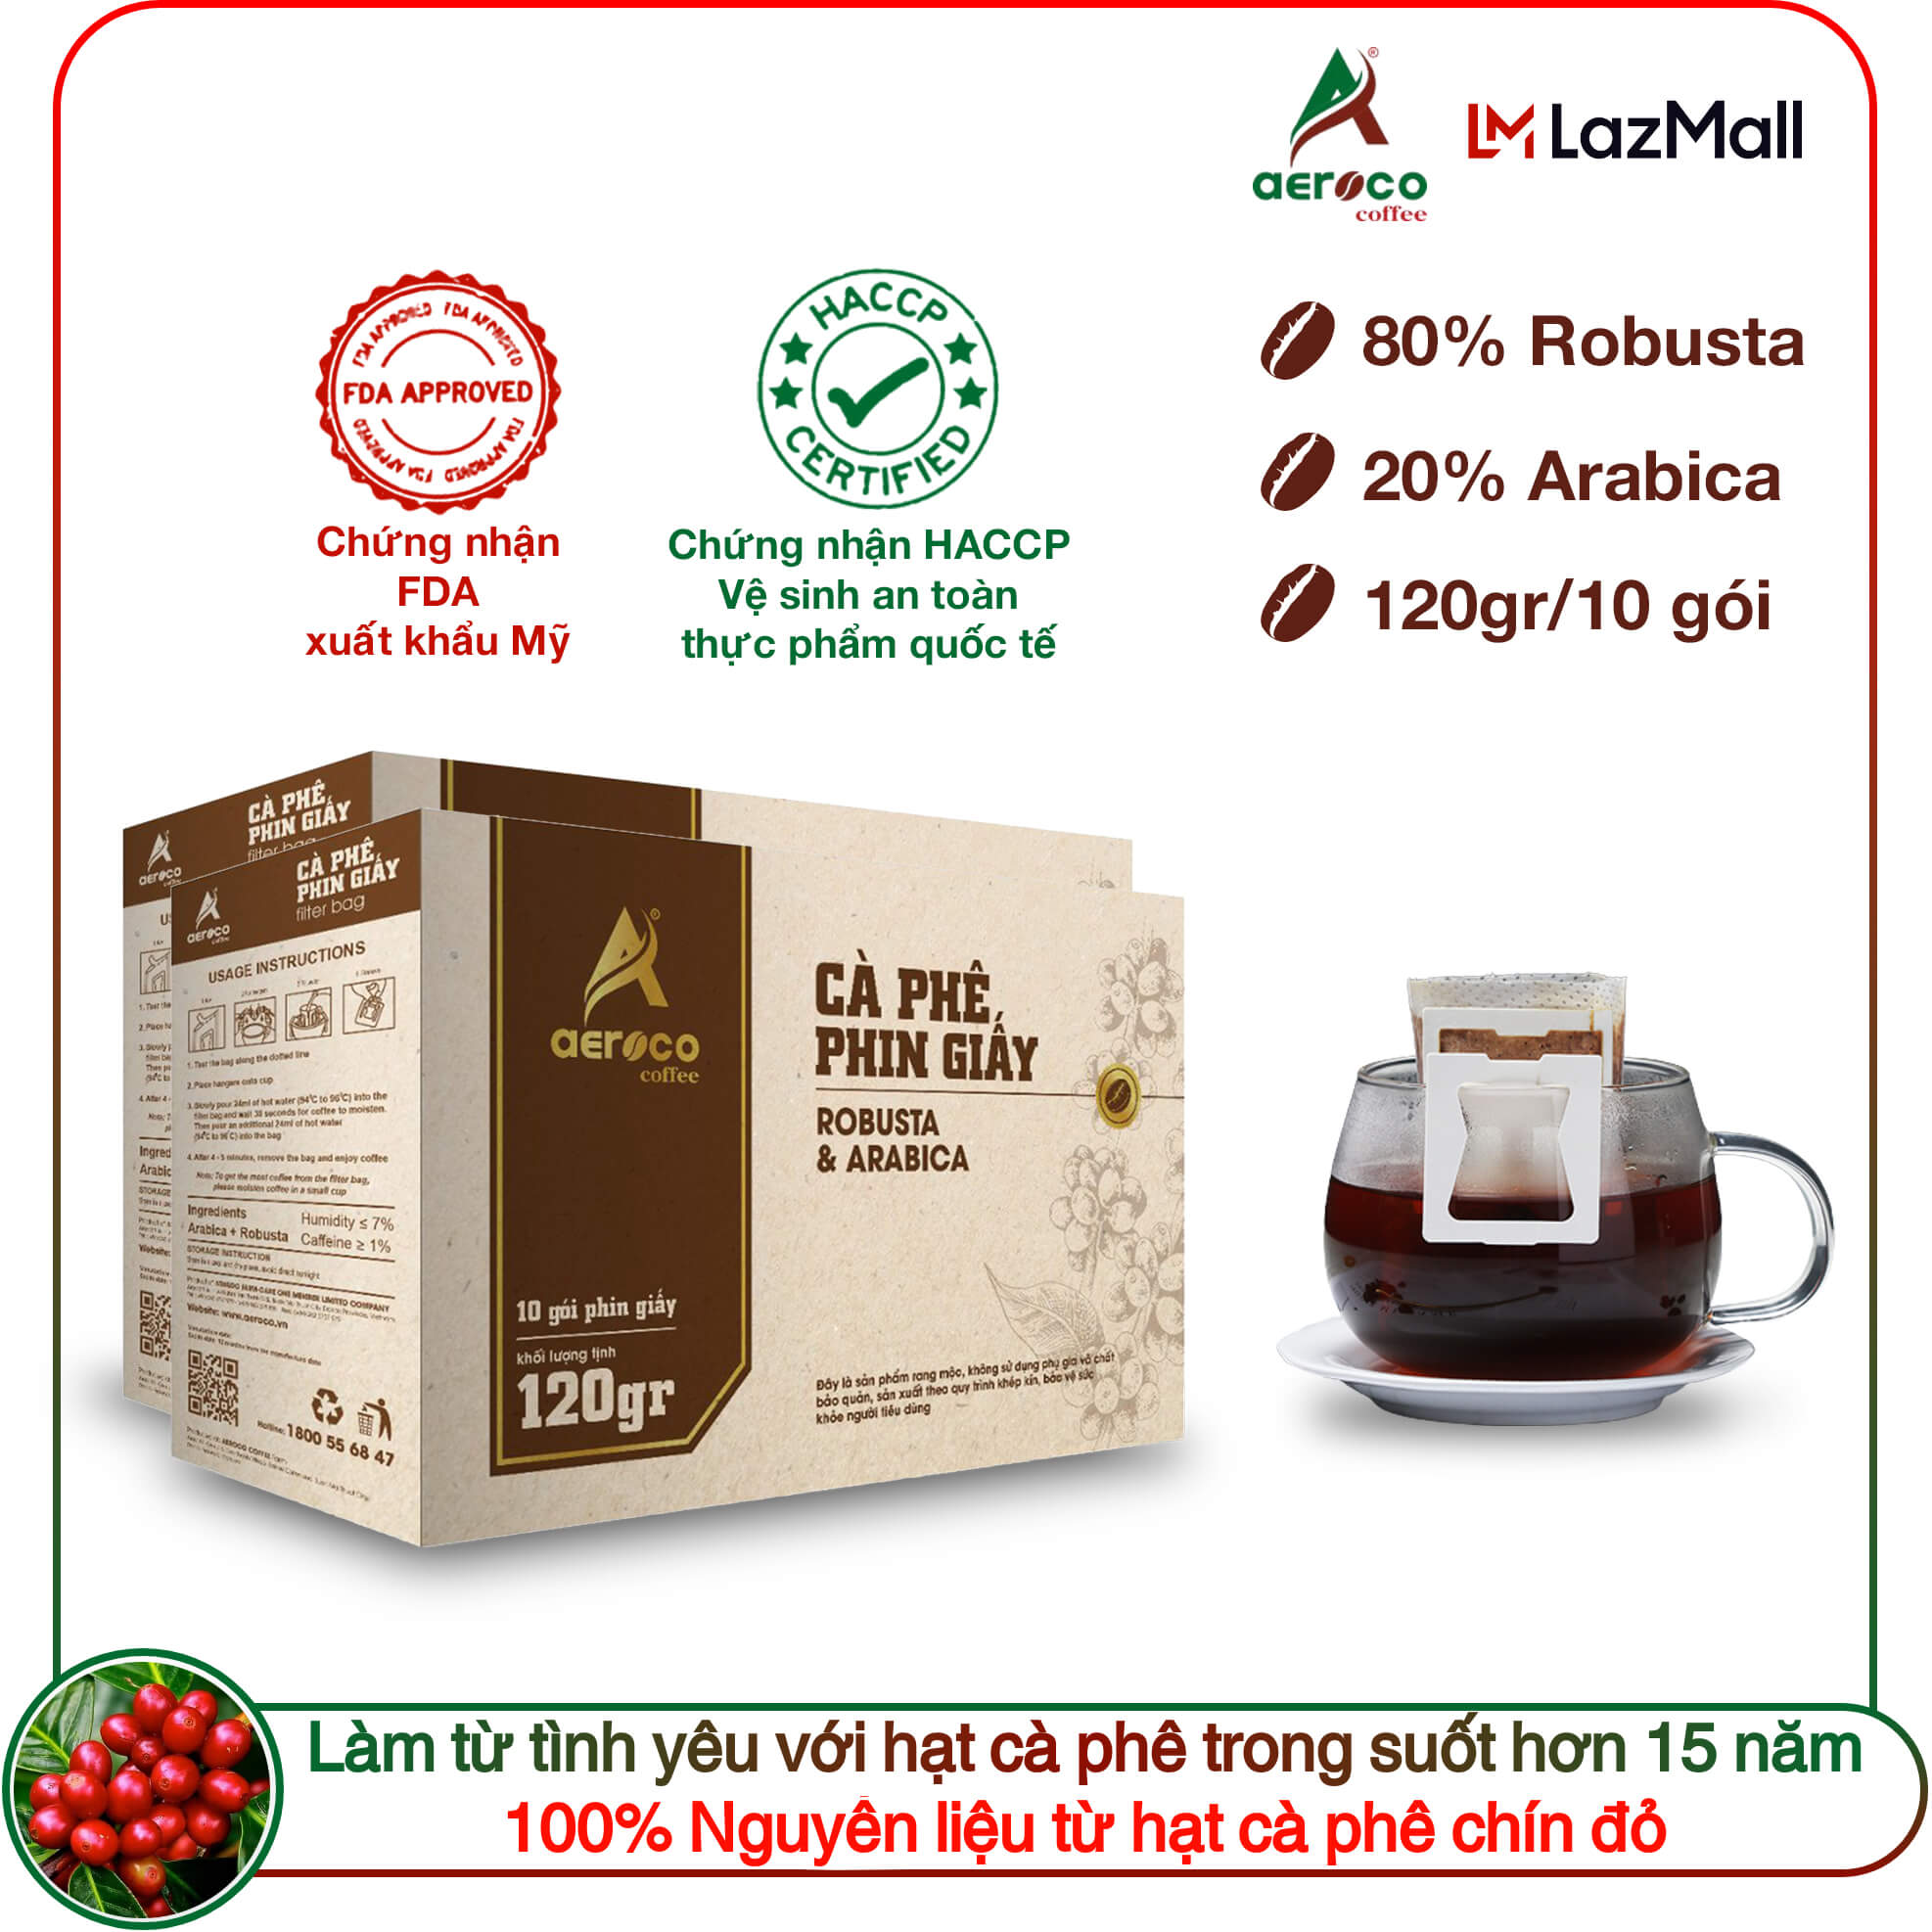 10 gói 12g_Cà phê phin giấy túi lọc AEROCO COFFEE nguyên chất 100%